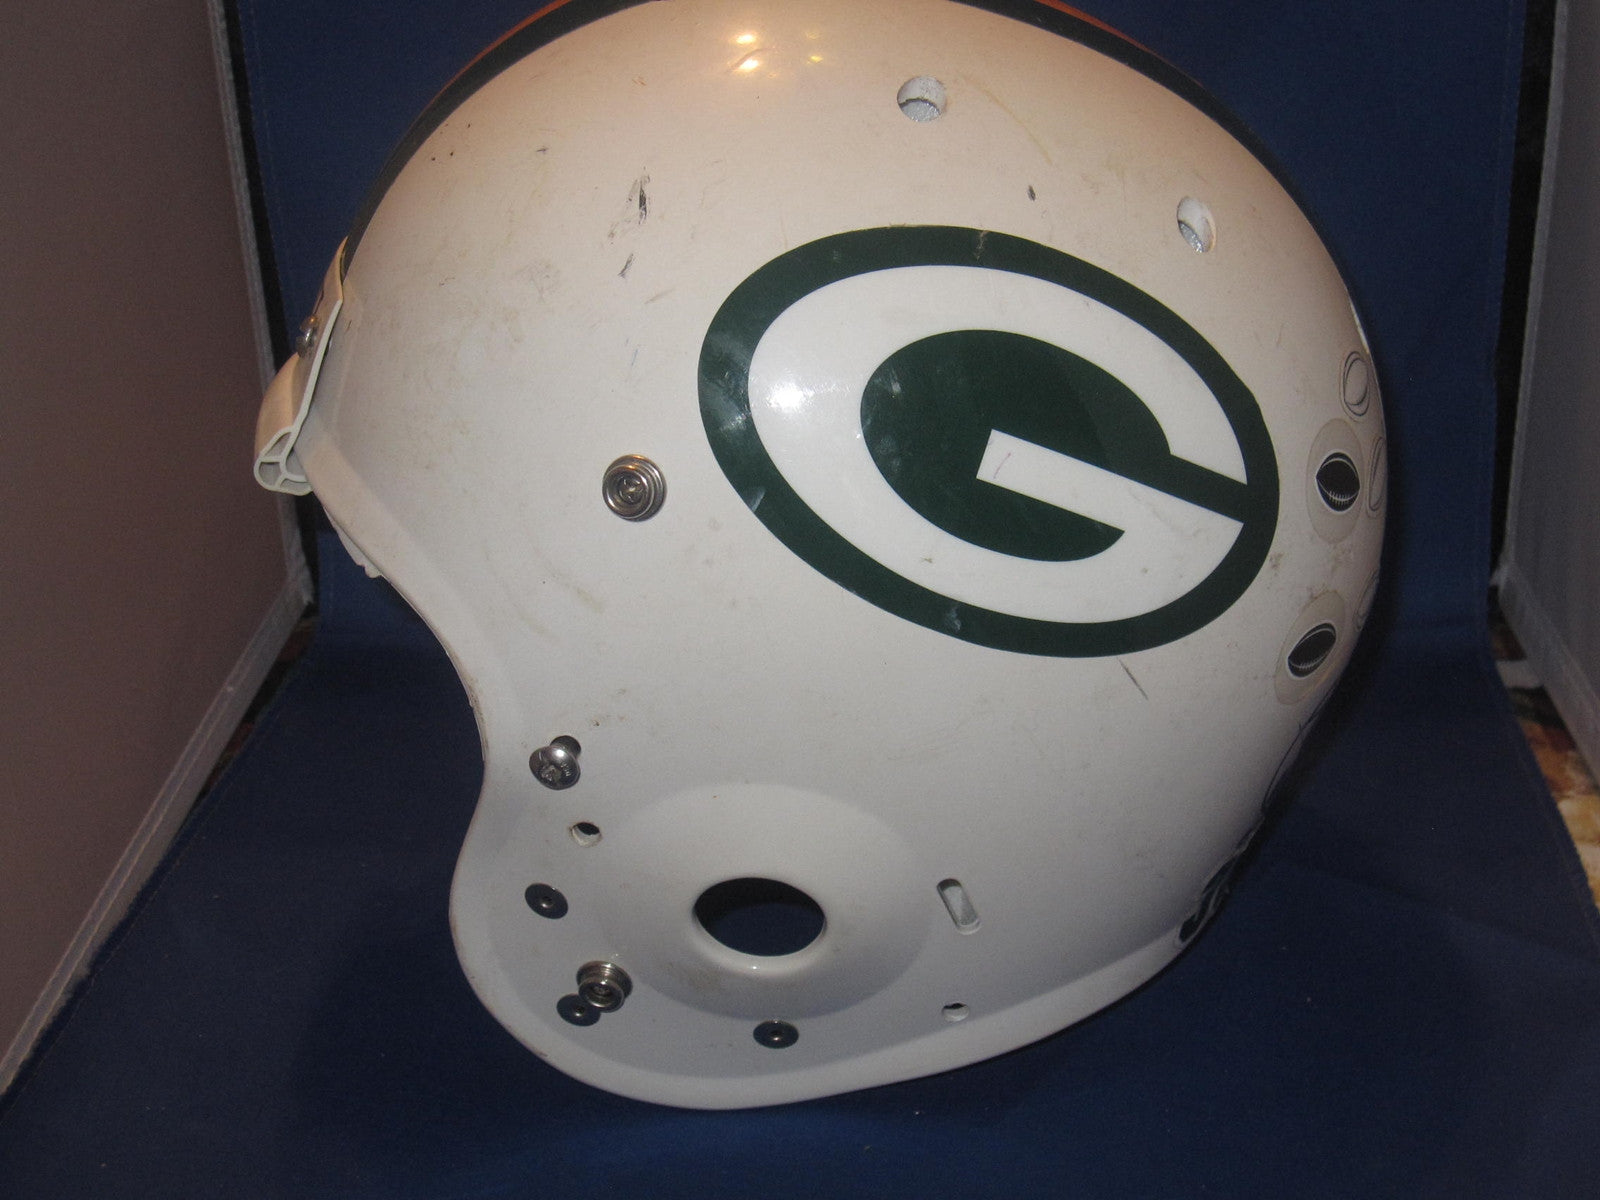 University of Georgia Bulldogs Game Used Football Helmet